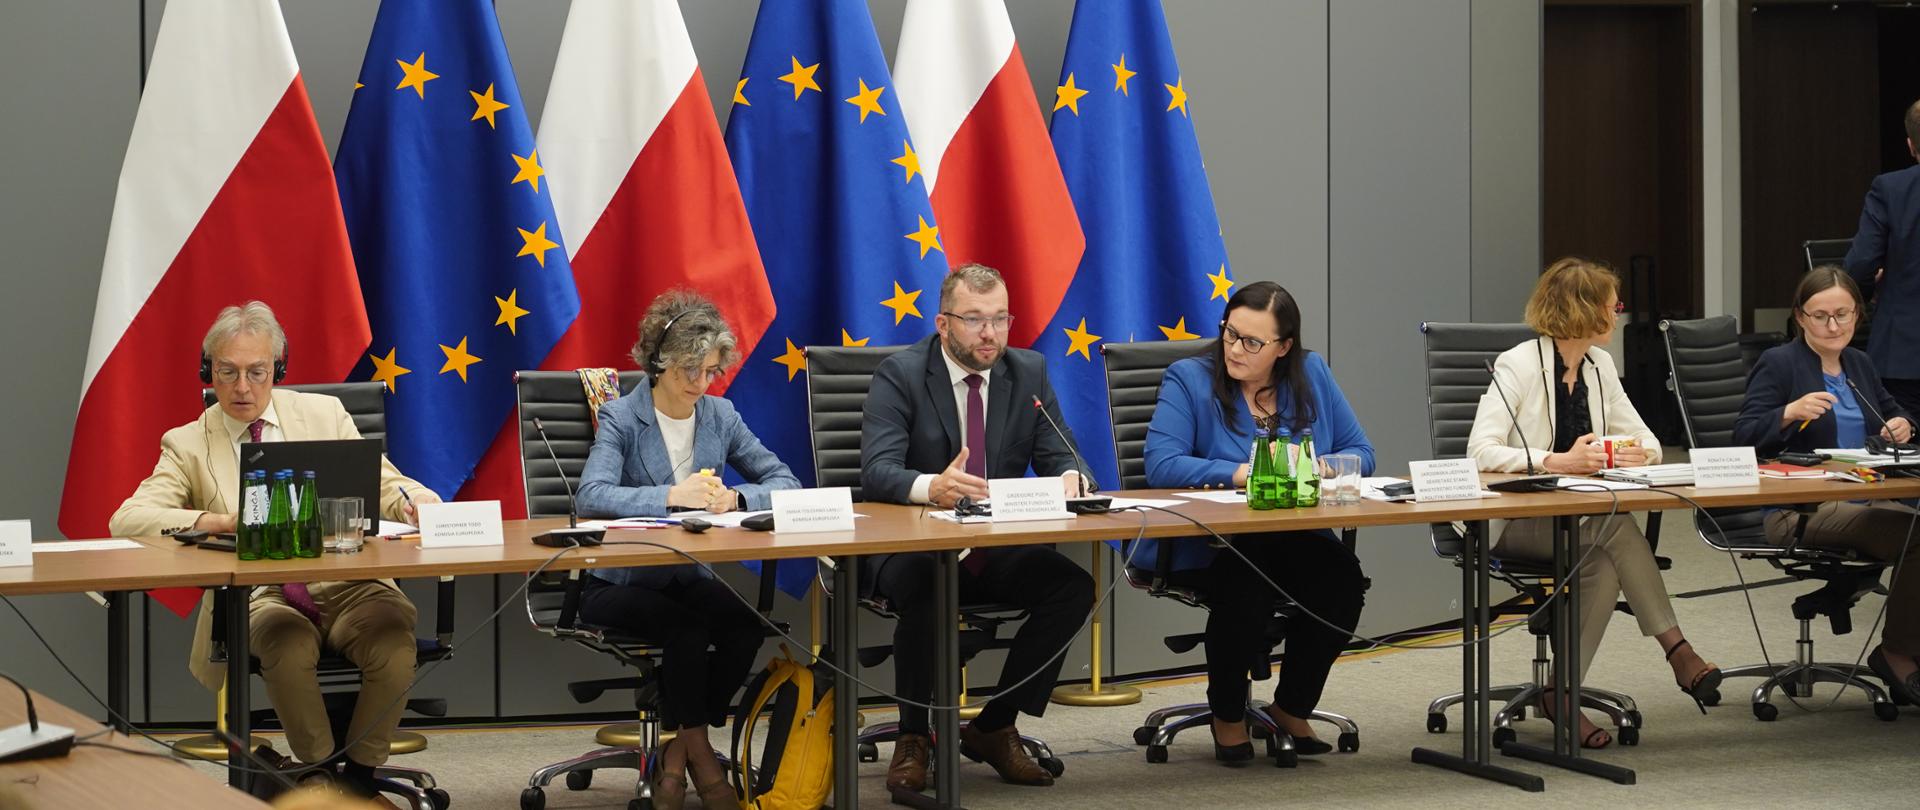 Grupa osób siedzi przy długim stole w sali konferencyjnej. Za nimi flagi PL i UE.